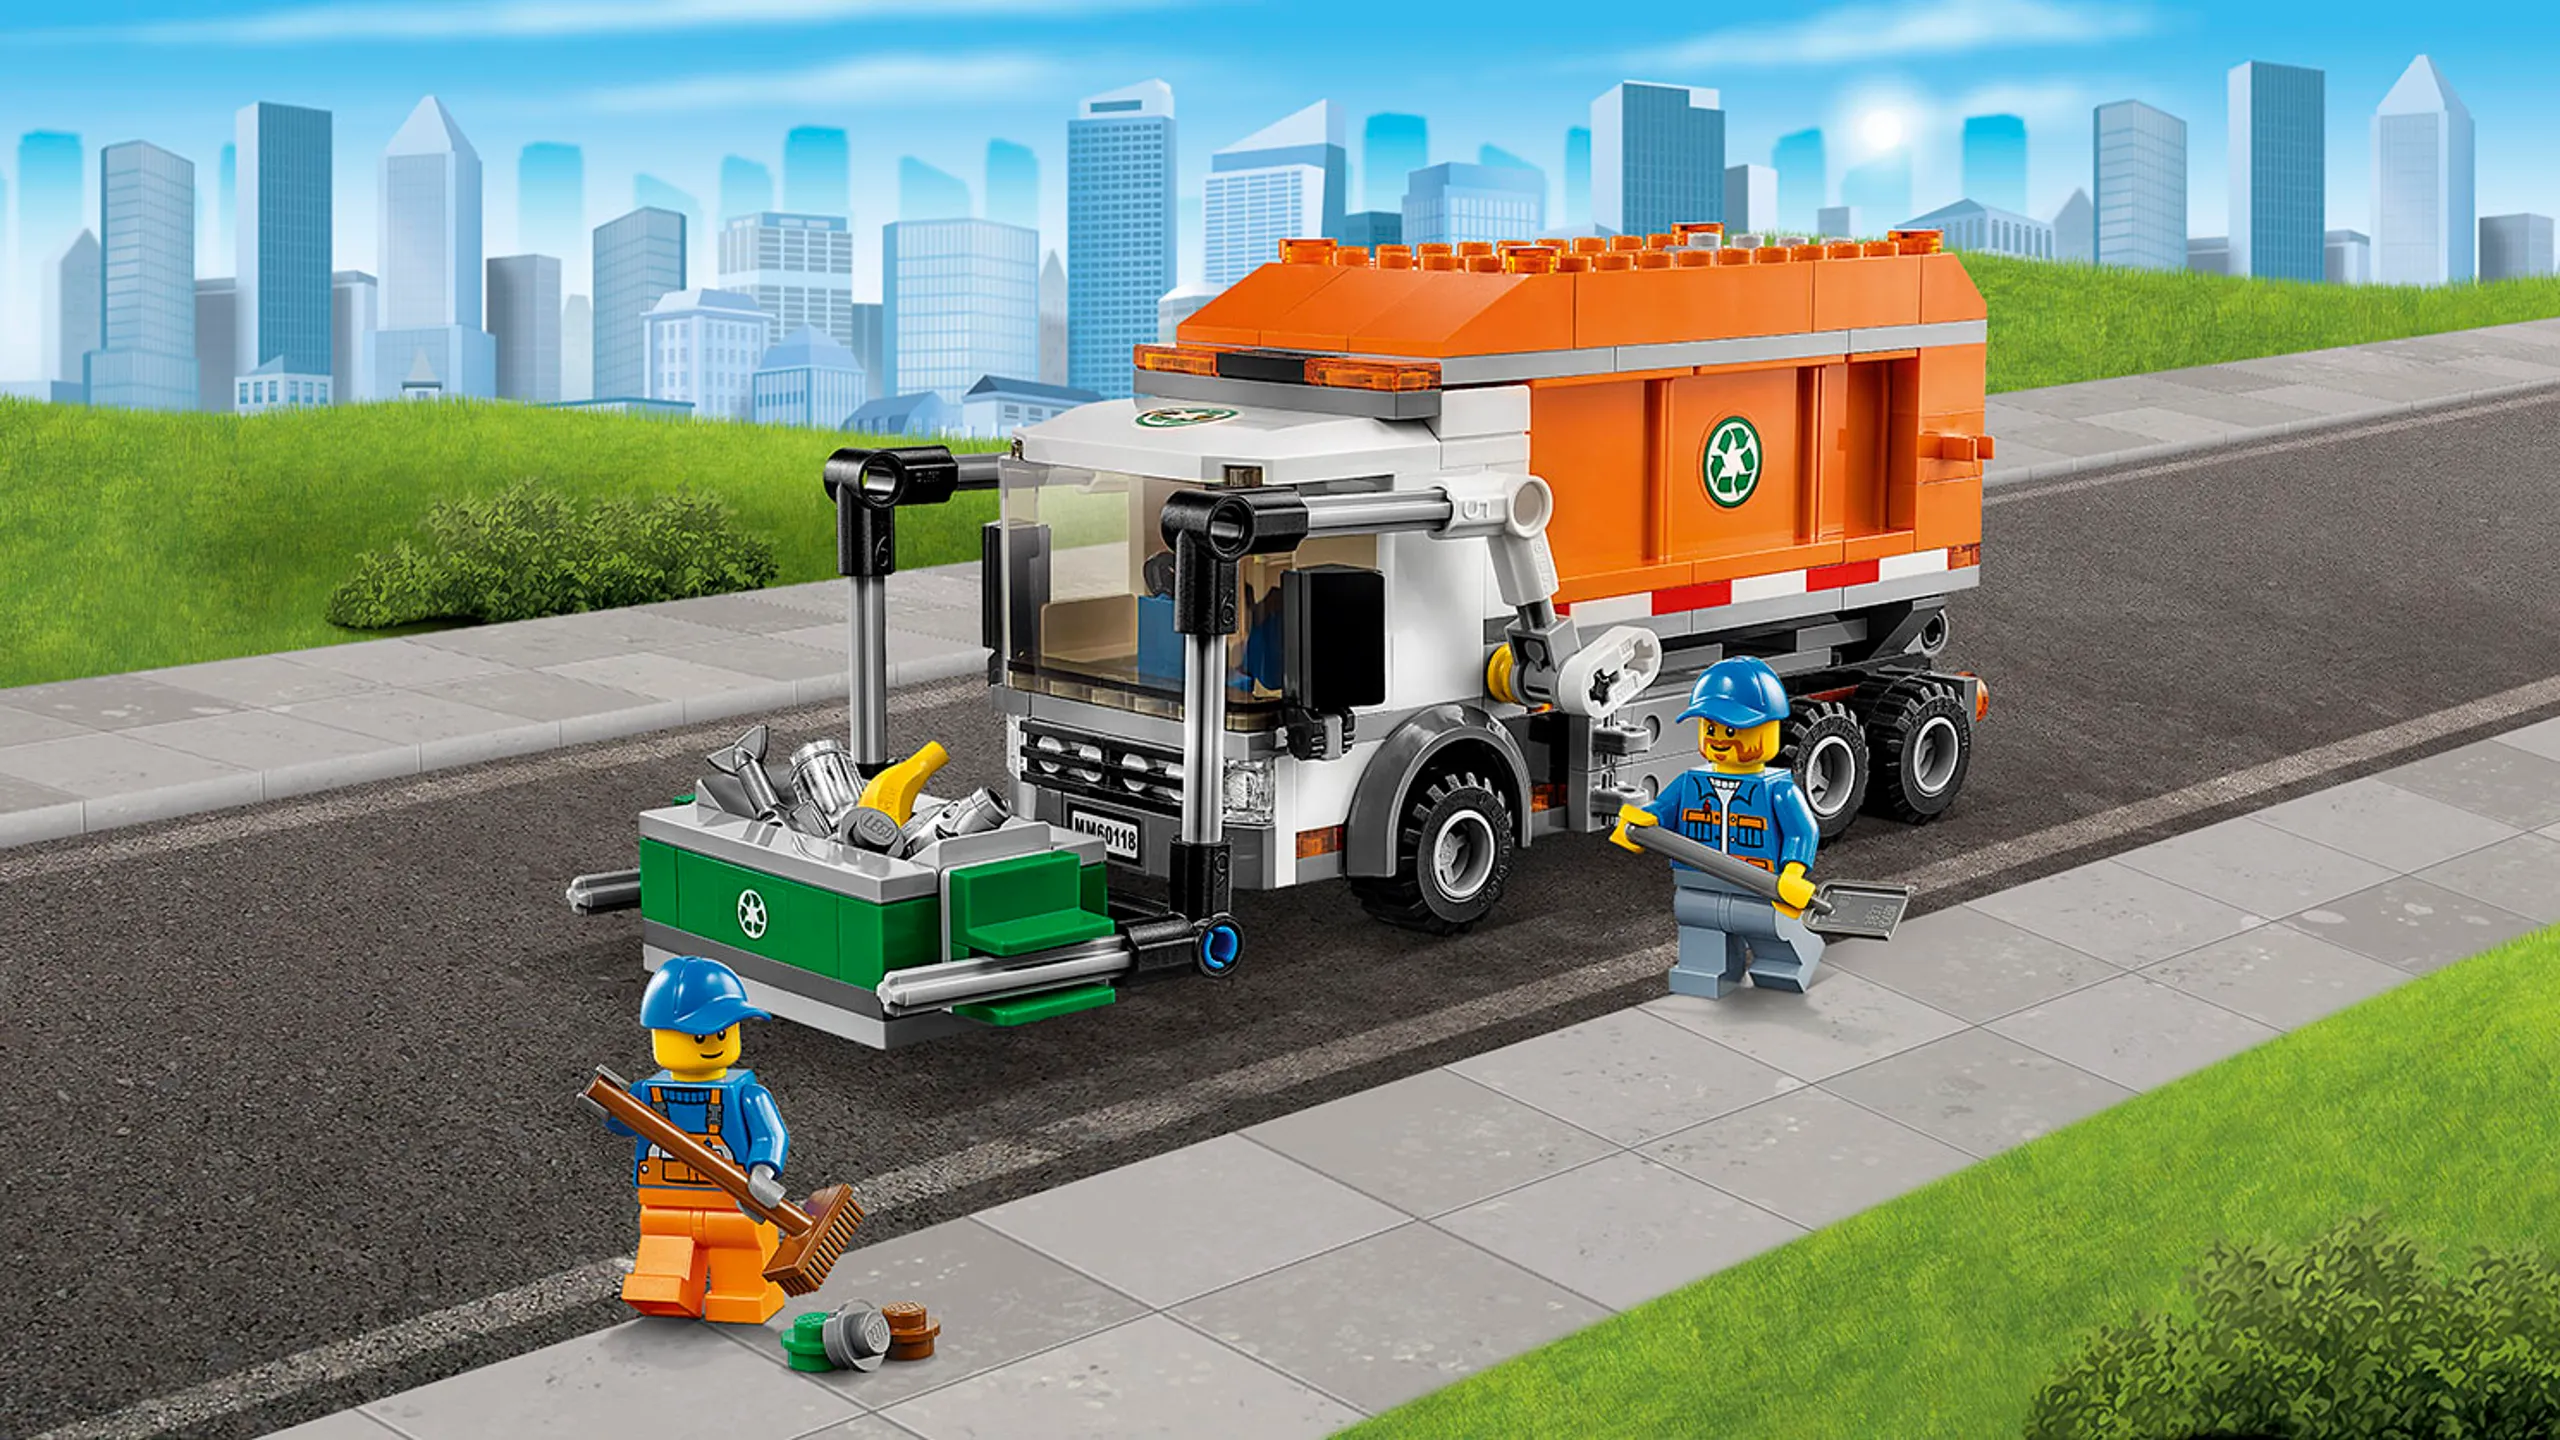 Camioncino della spazzatura, cassone e minifigure Super Veicoli LEGO City – Camioncino della spazzatura 60118